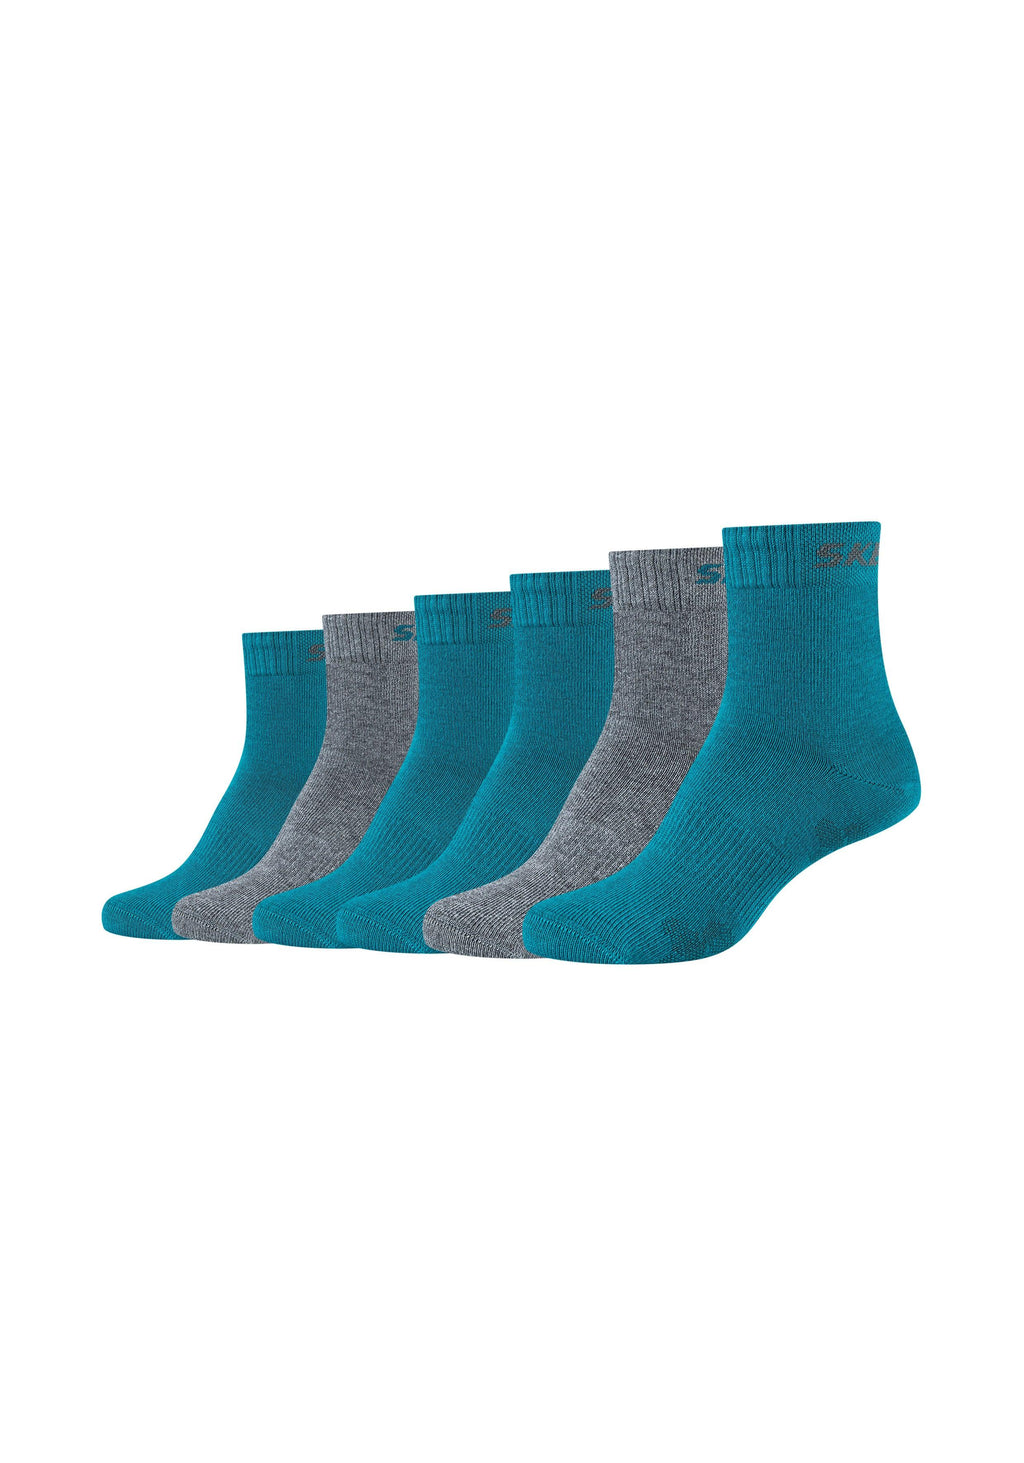 Kinder Socken – Ventilation ONSKINERY 6er Pack Mesh